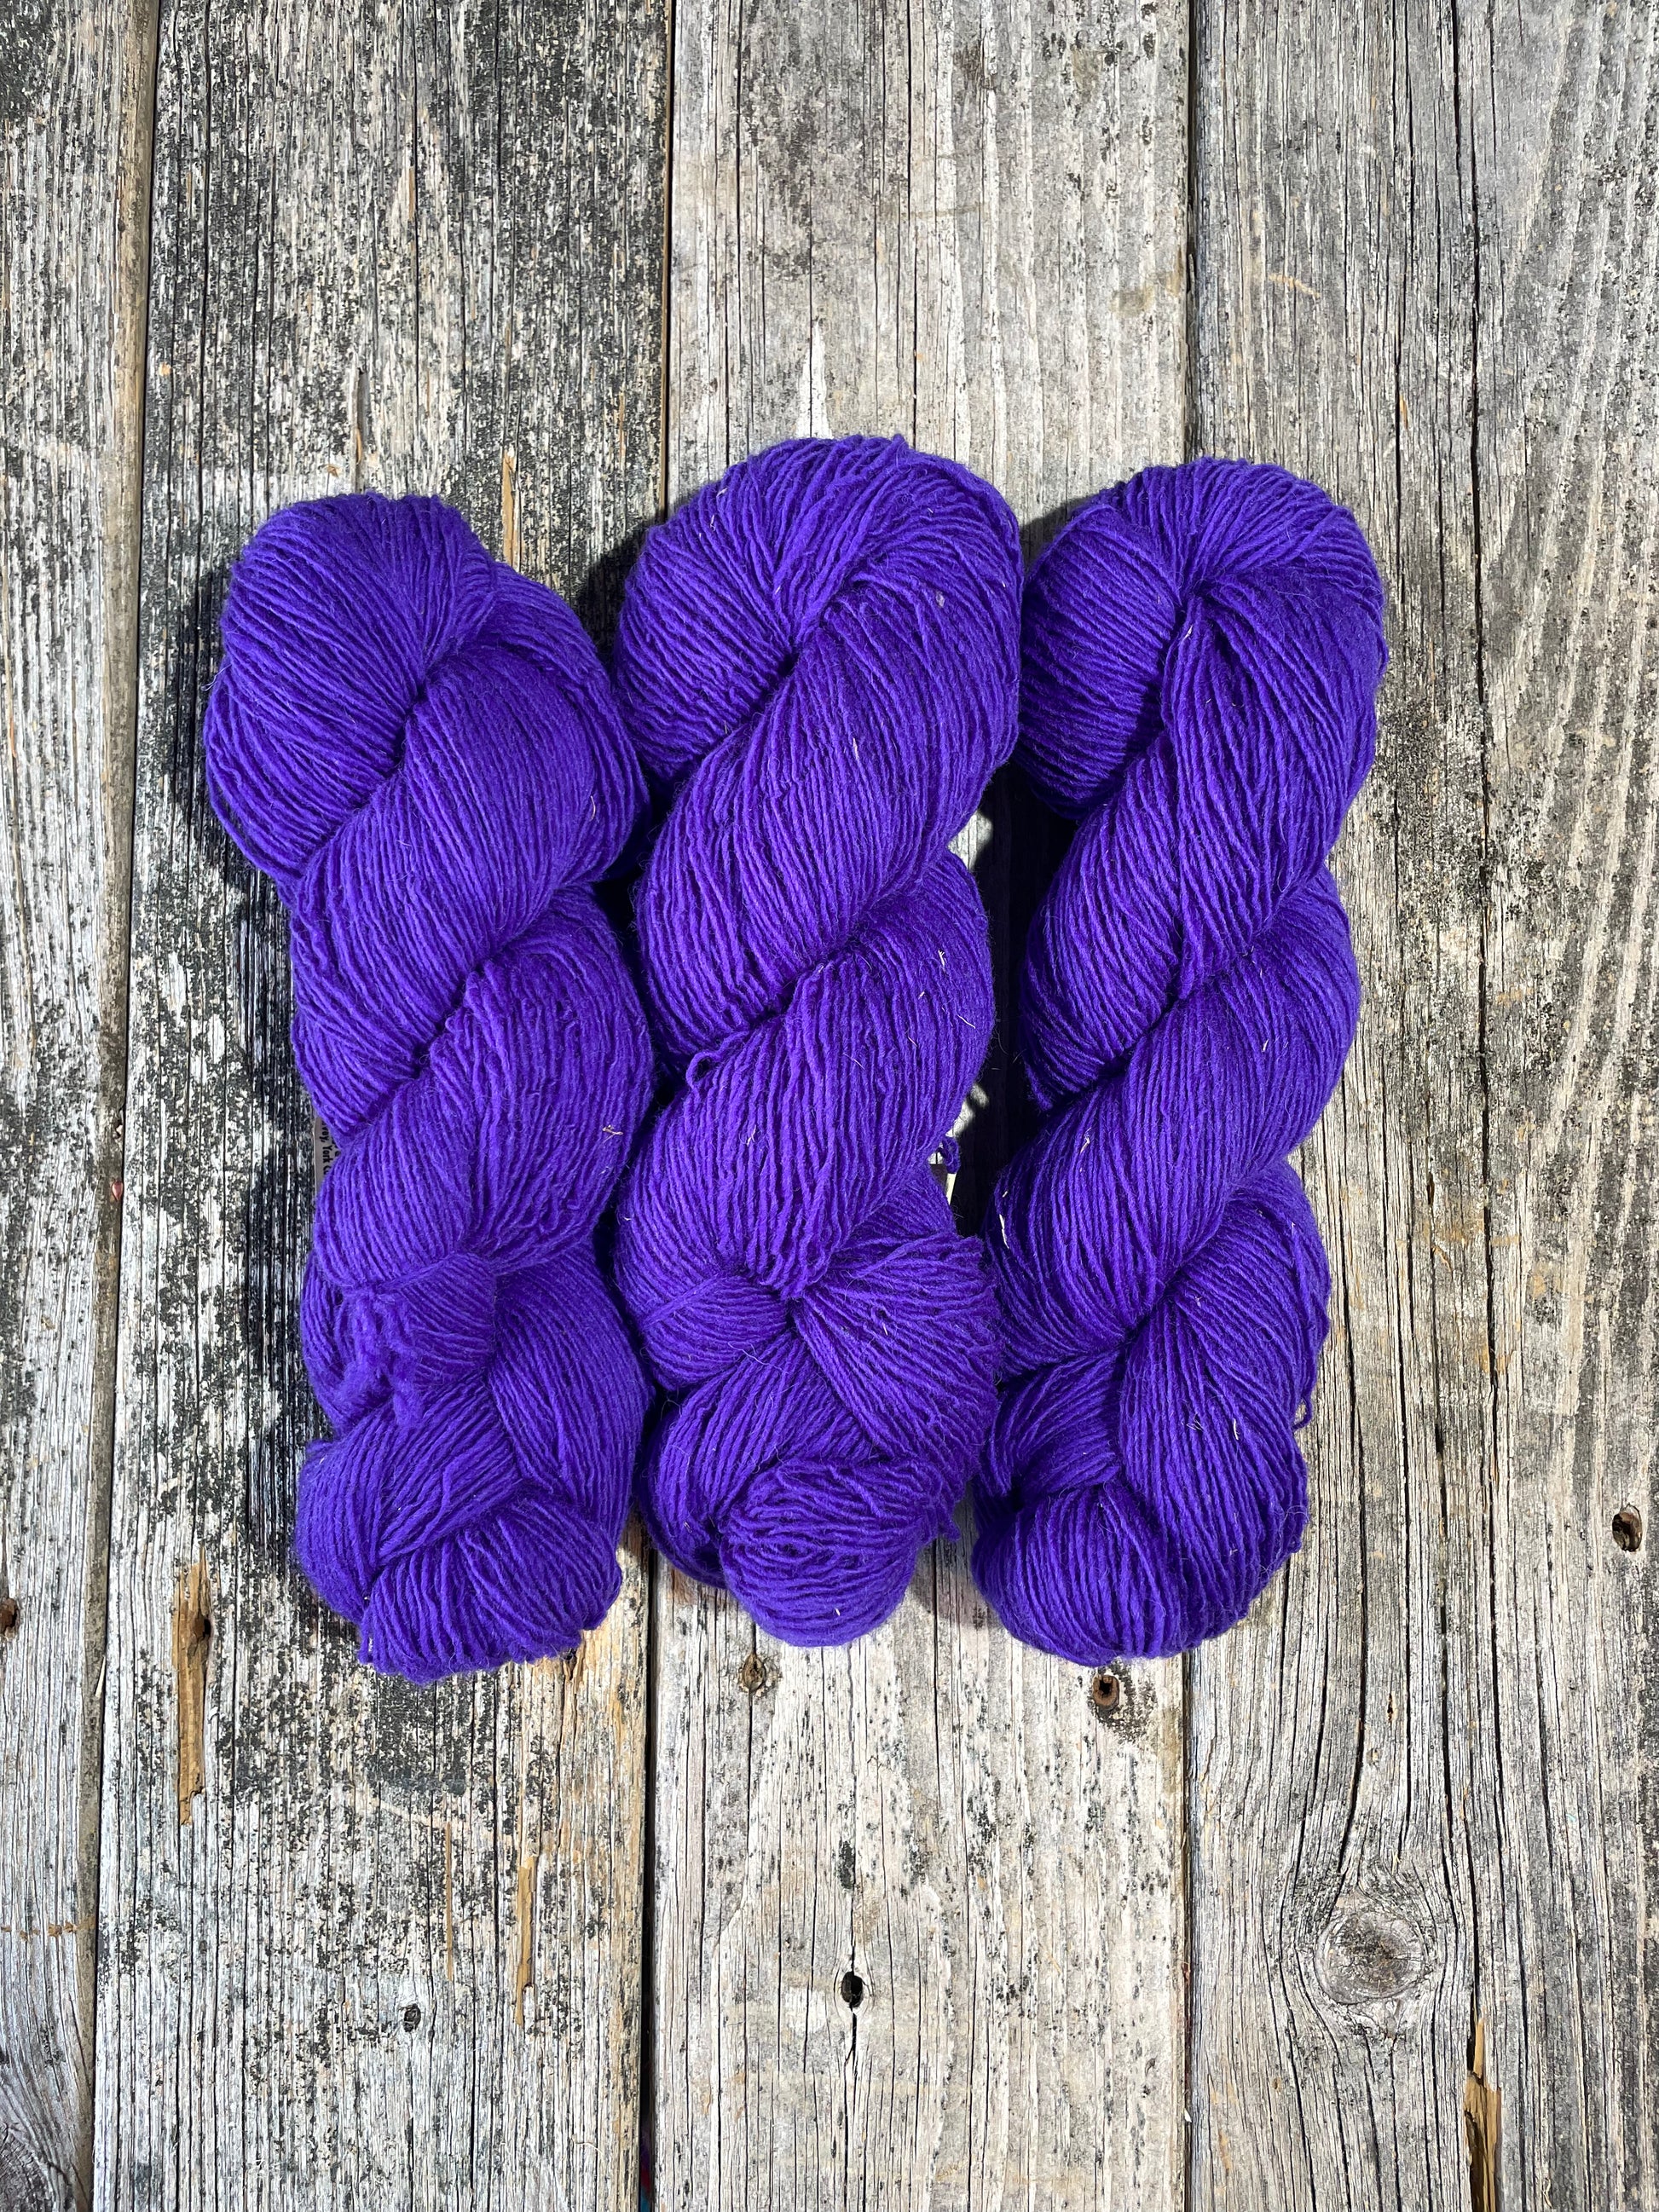 Briggs & Little Sport: Violet - Maine Yarn & Fiber Supply